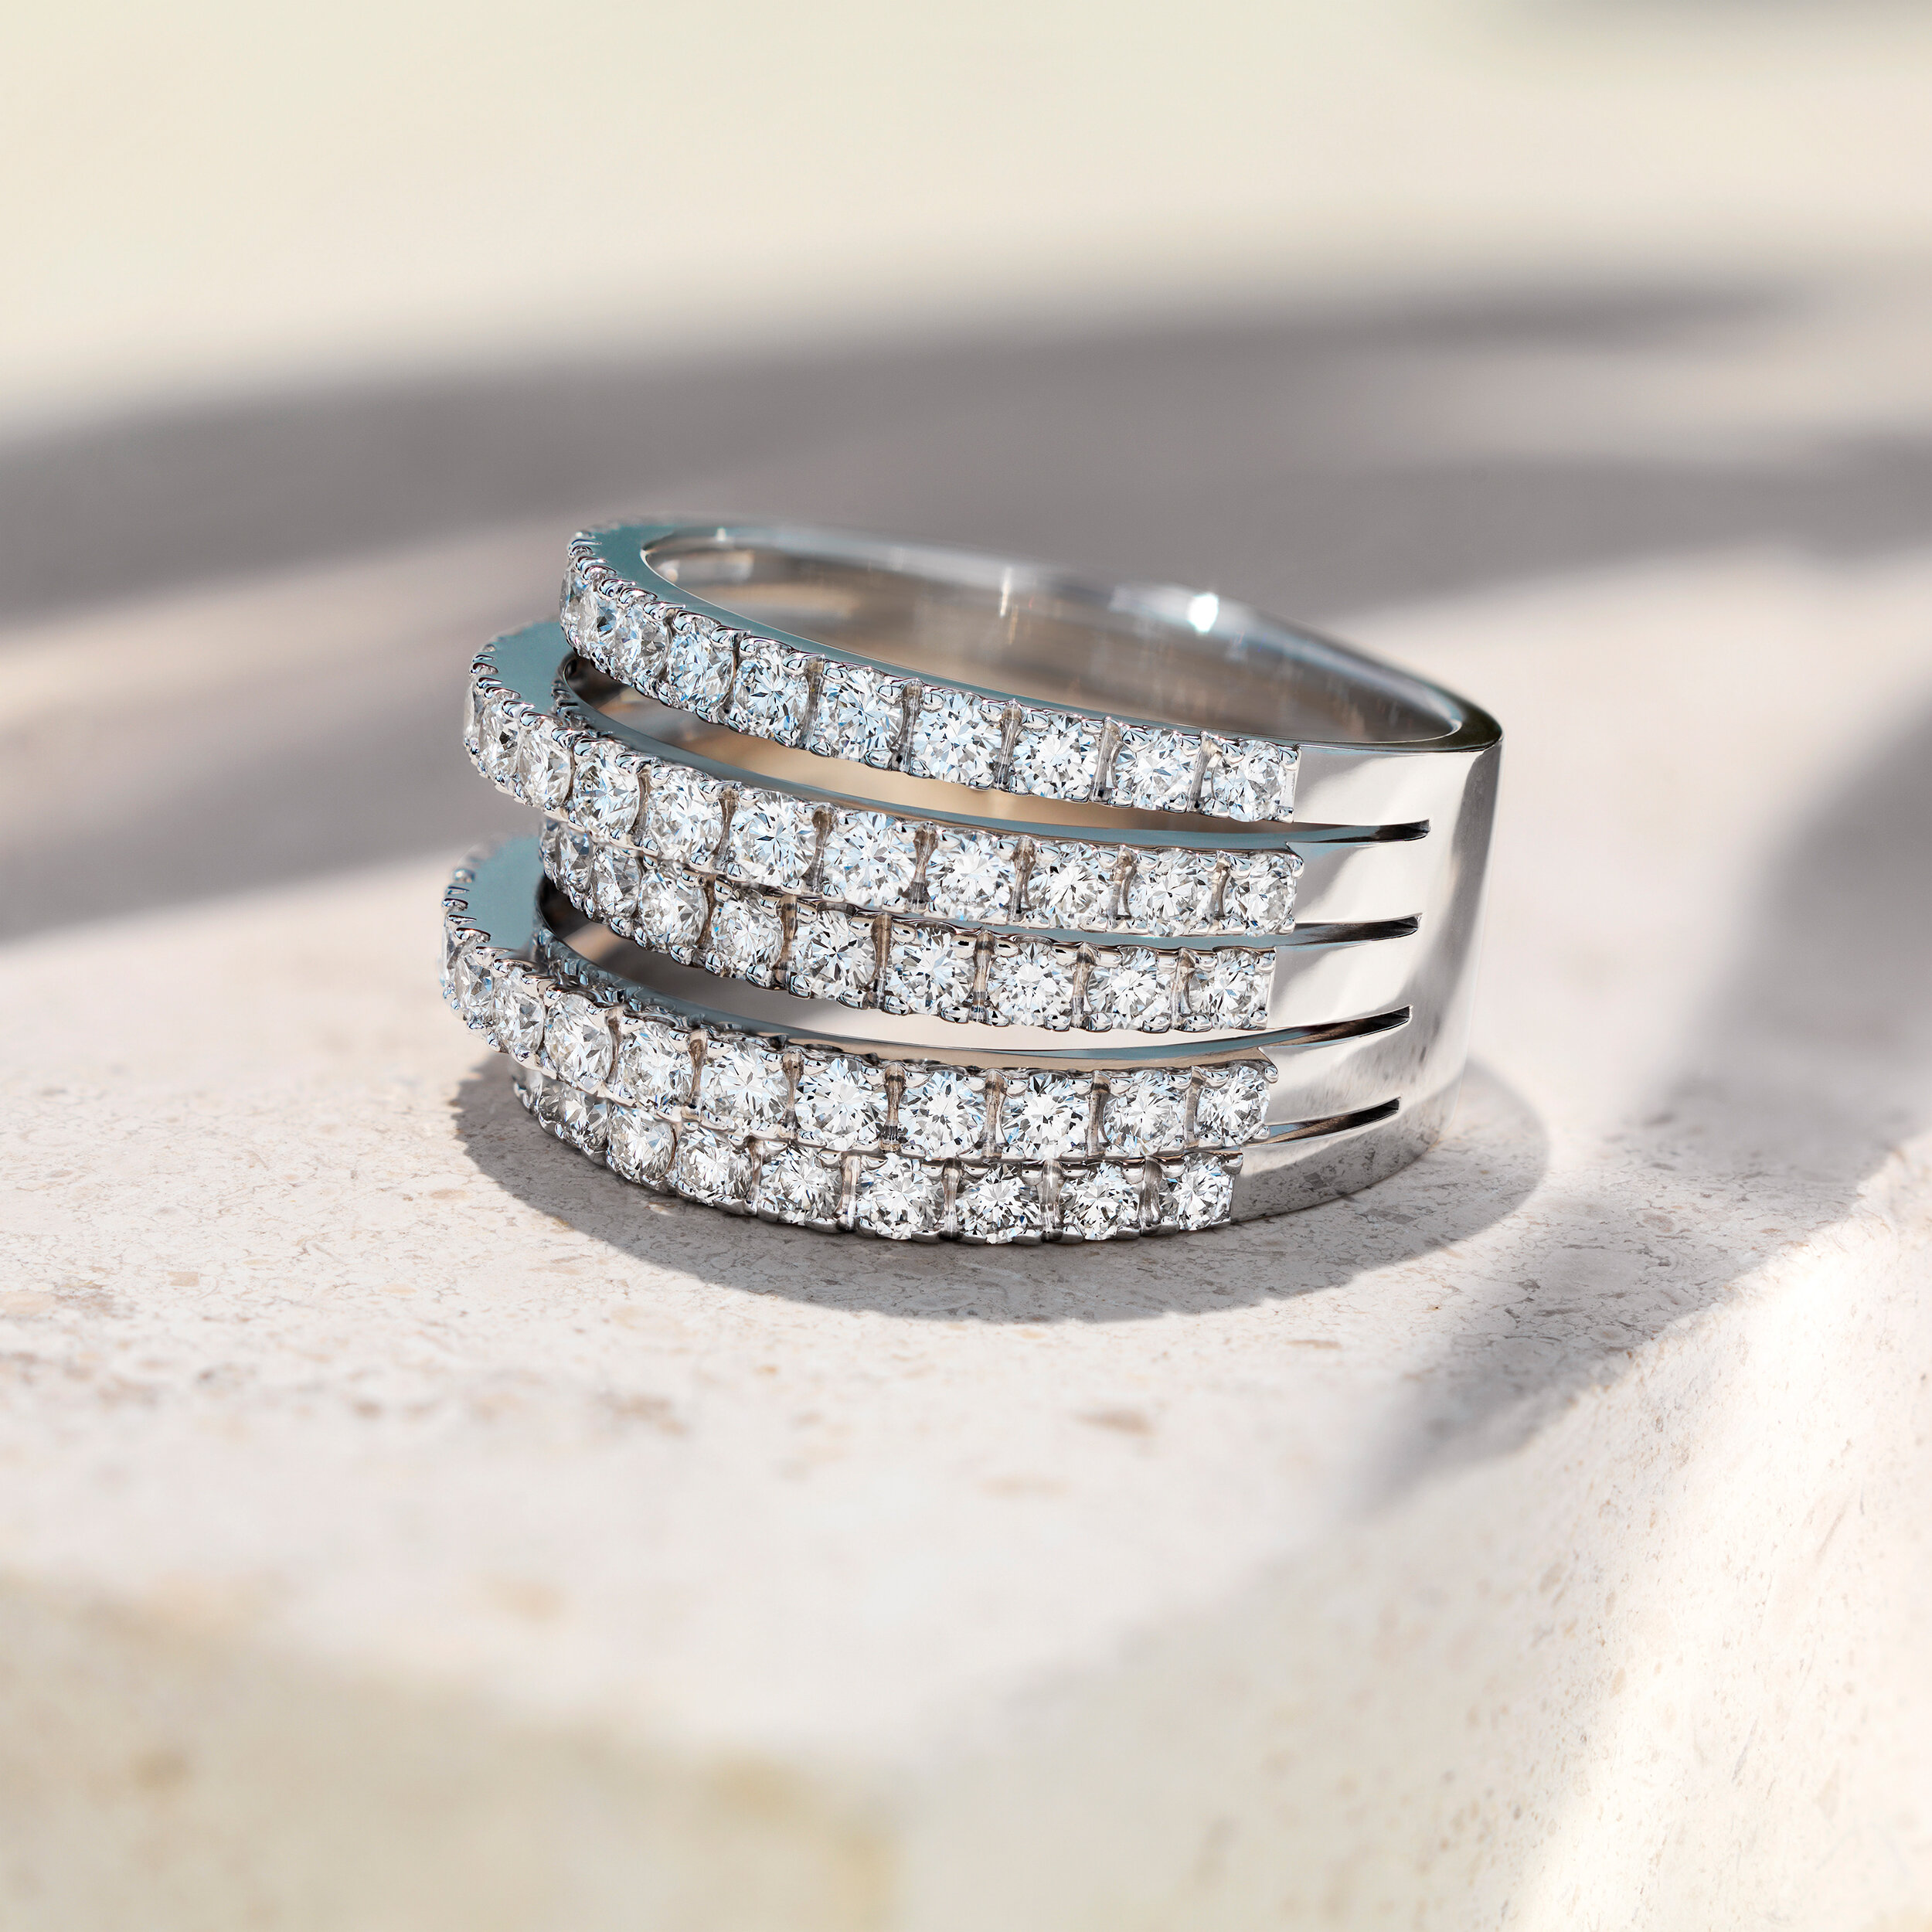  Diamond ring shot for De Beers Diamond Jewellers 